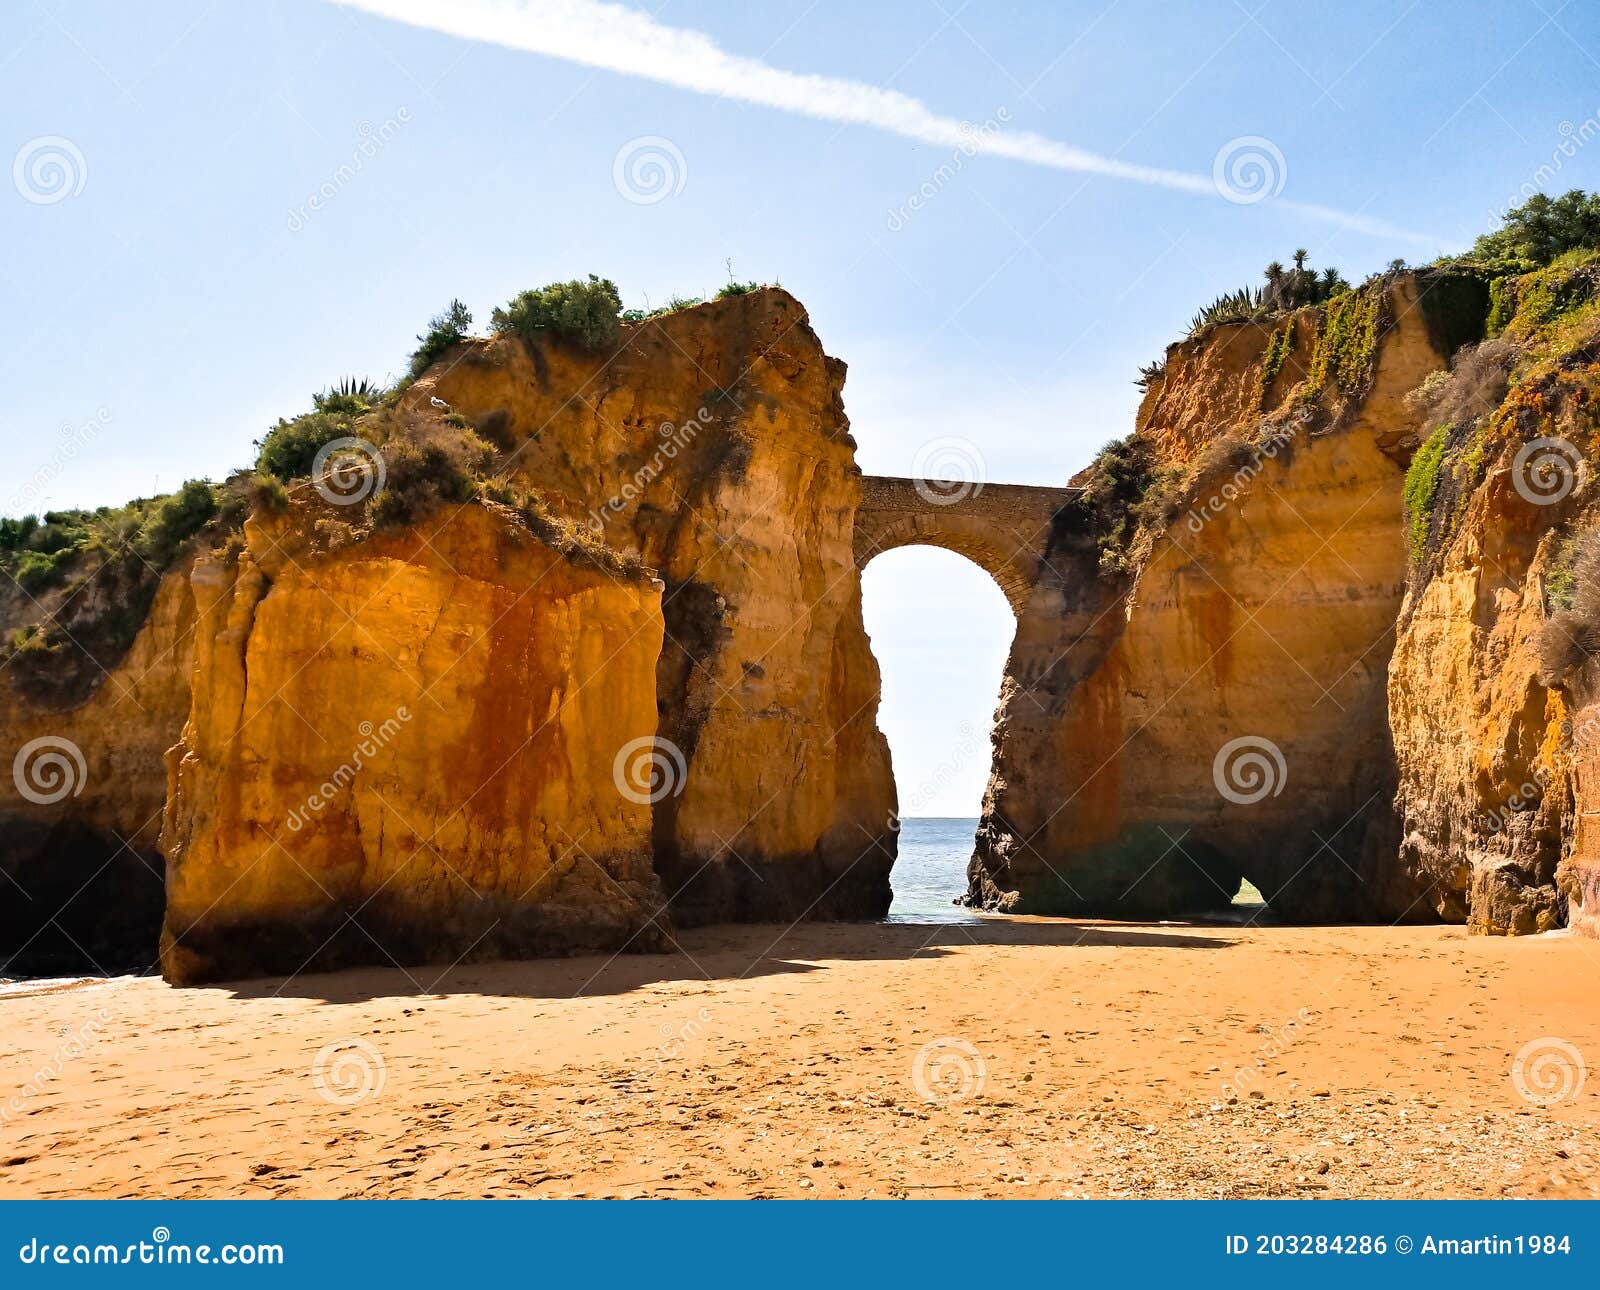 roman bridge in praia dos estudiantes in lagos in the portuguese algarve